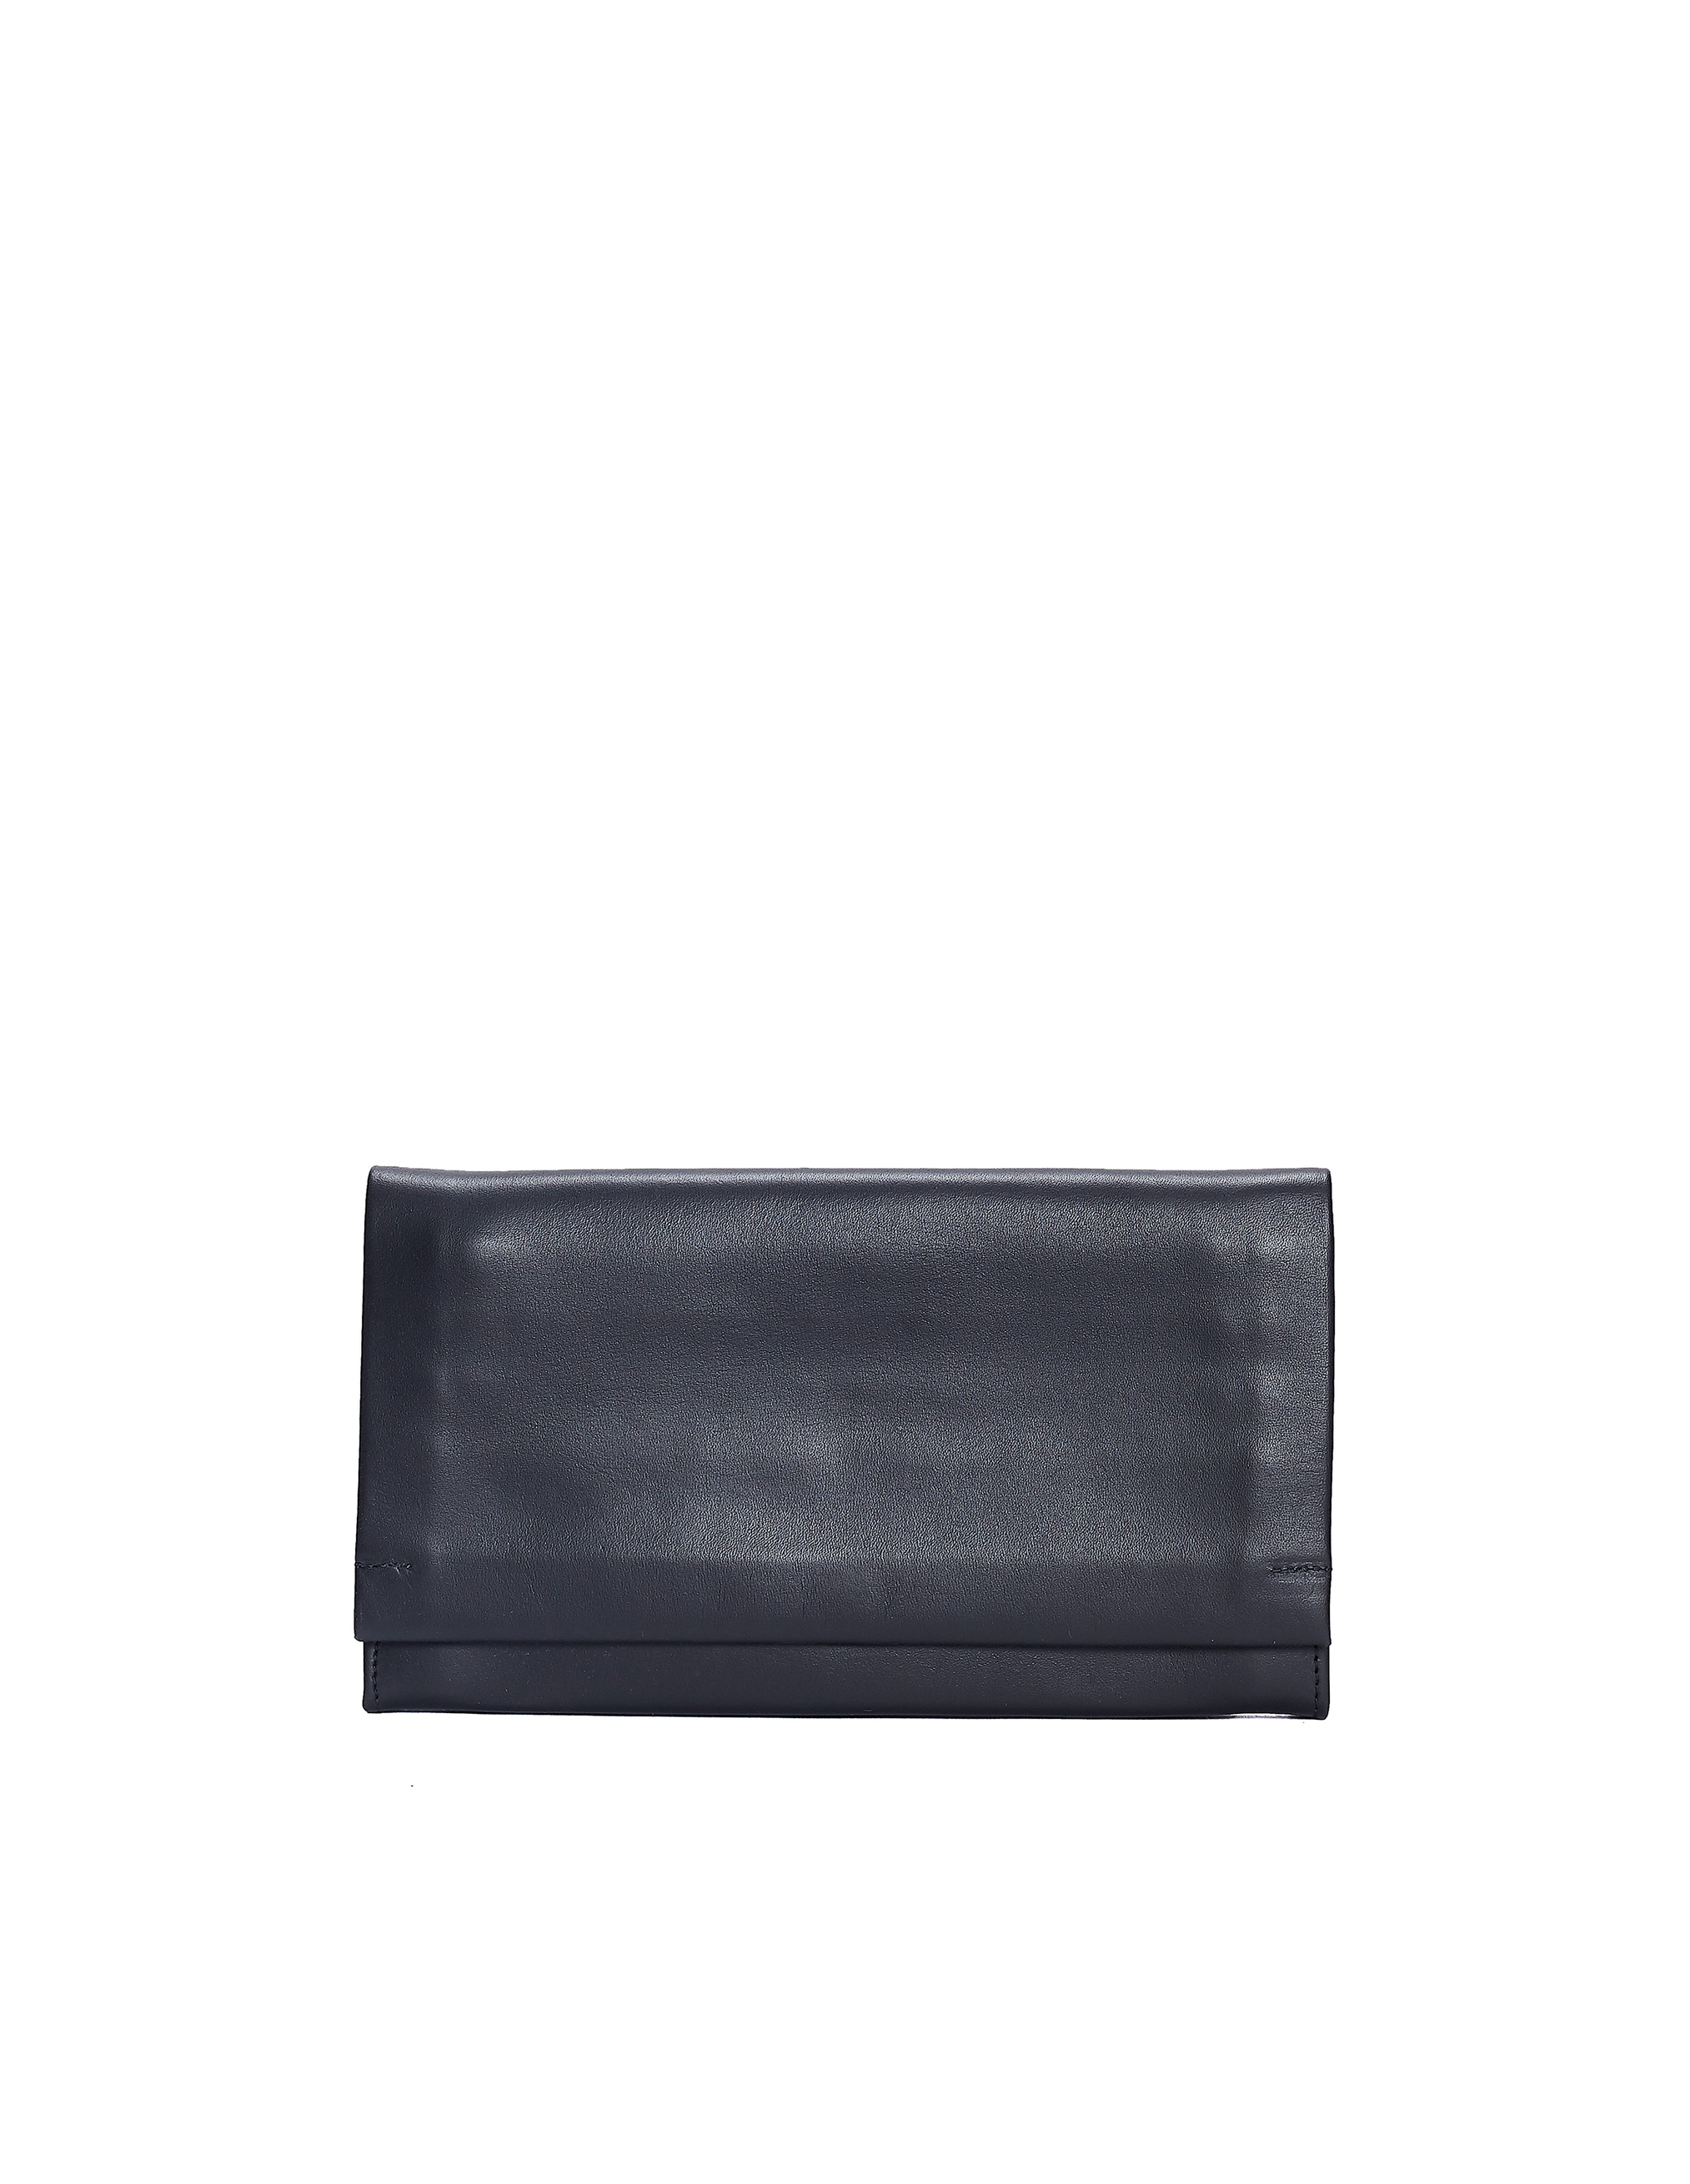 Черный кожаный кошелек с плечевым ремешком Isaac Reina 200/blk, размер One Size